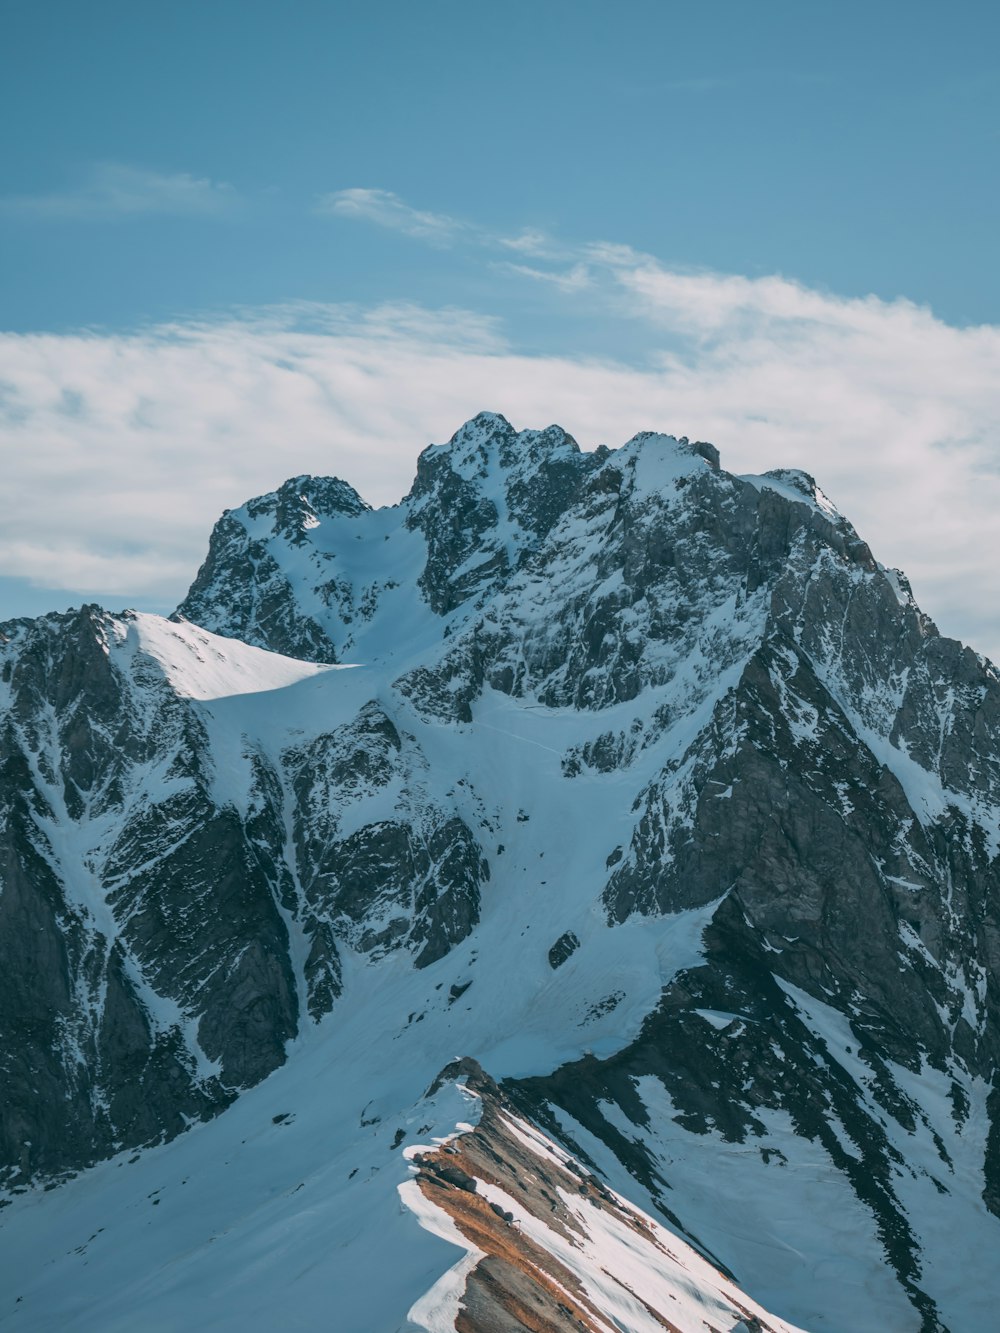 Photographie aérienne de vue du sommet d’une montagne couverte de neige sous un ciel blanc et bleu